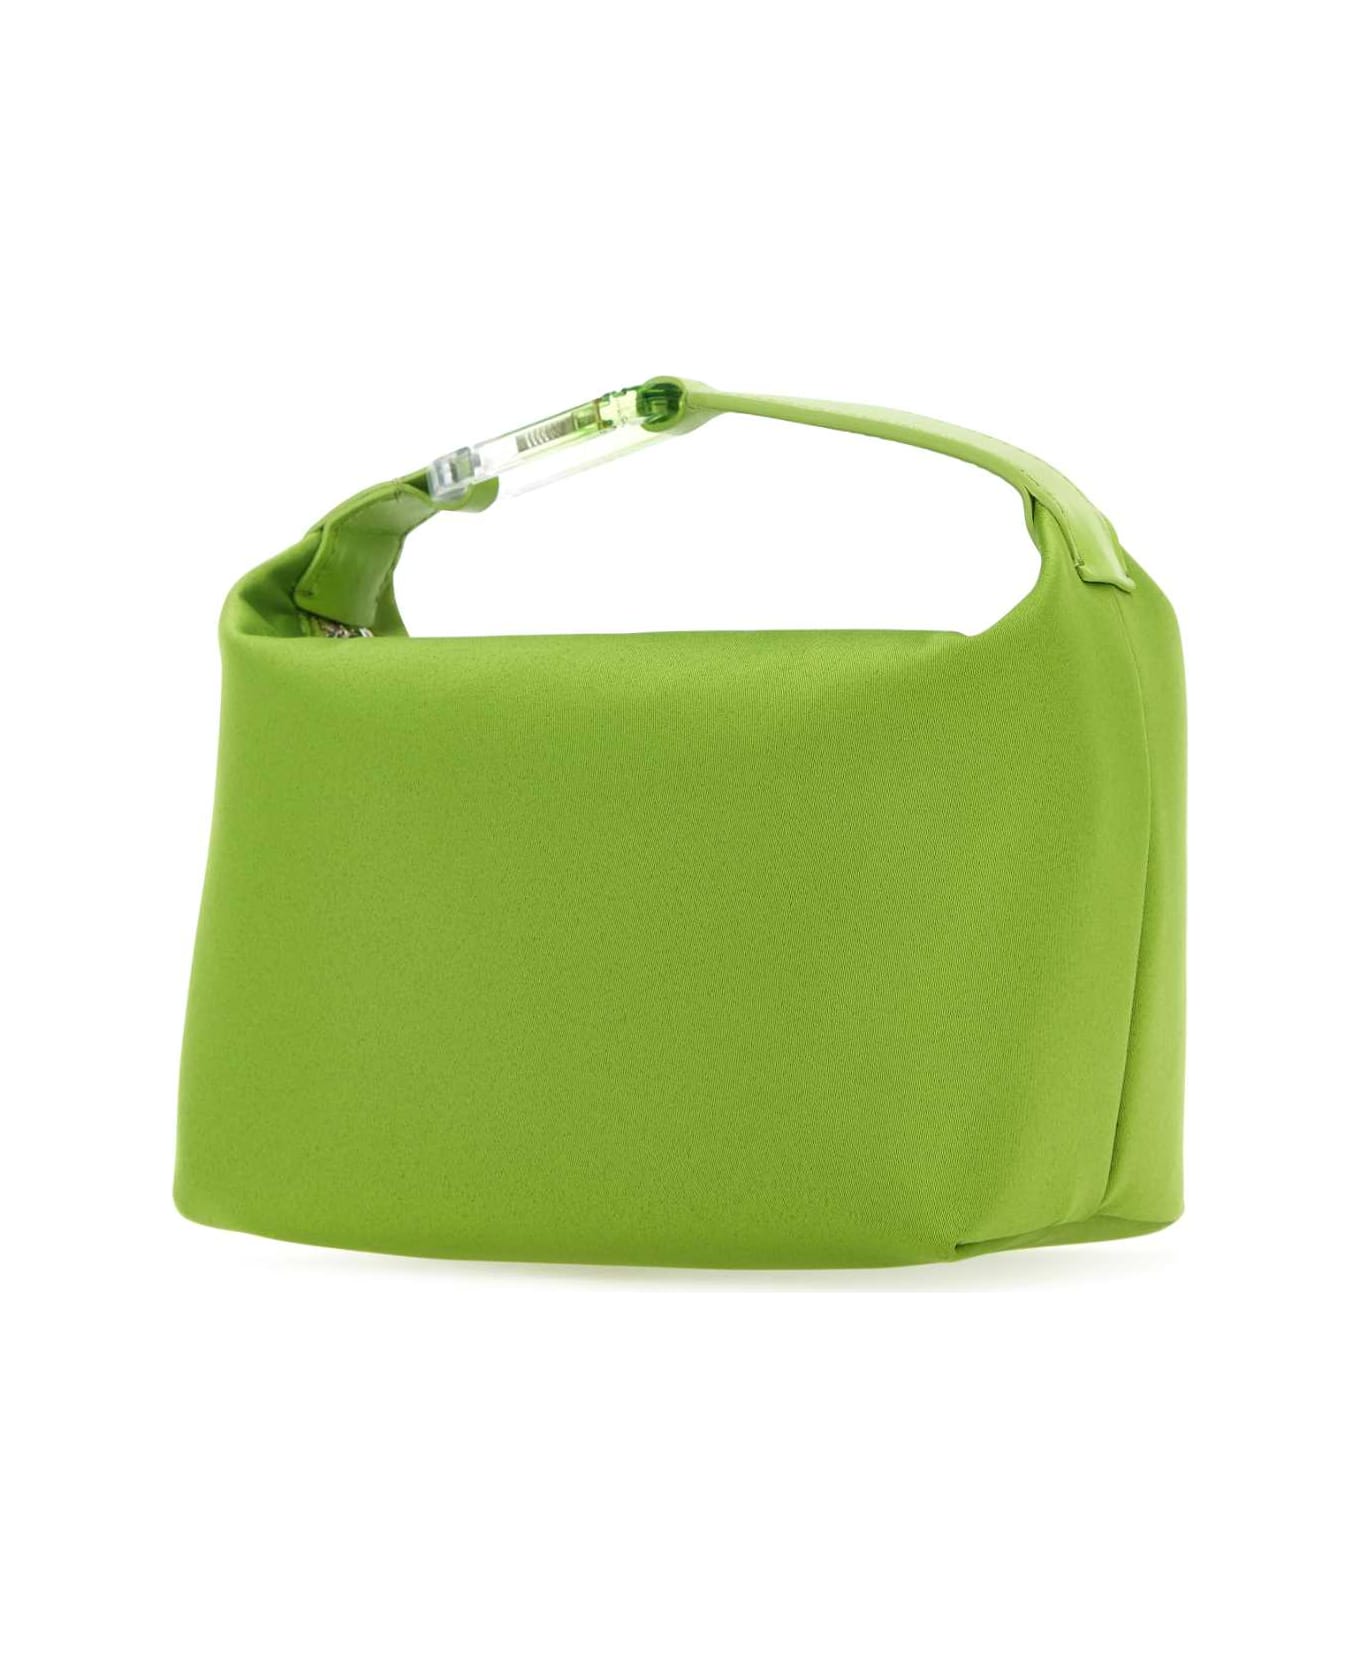 EÉRA Green Satin Moonbag Handbag - GREEN